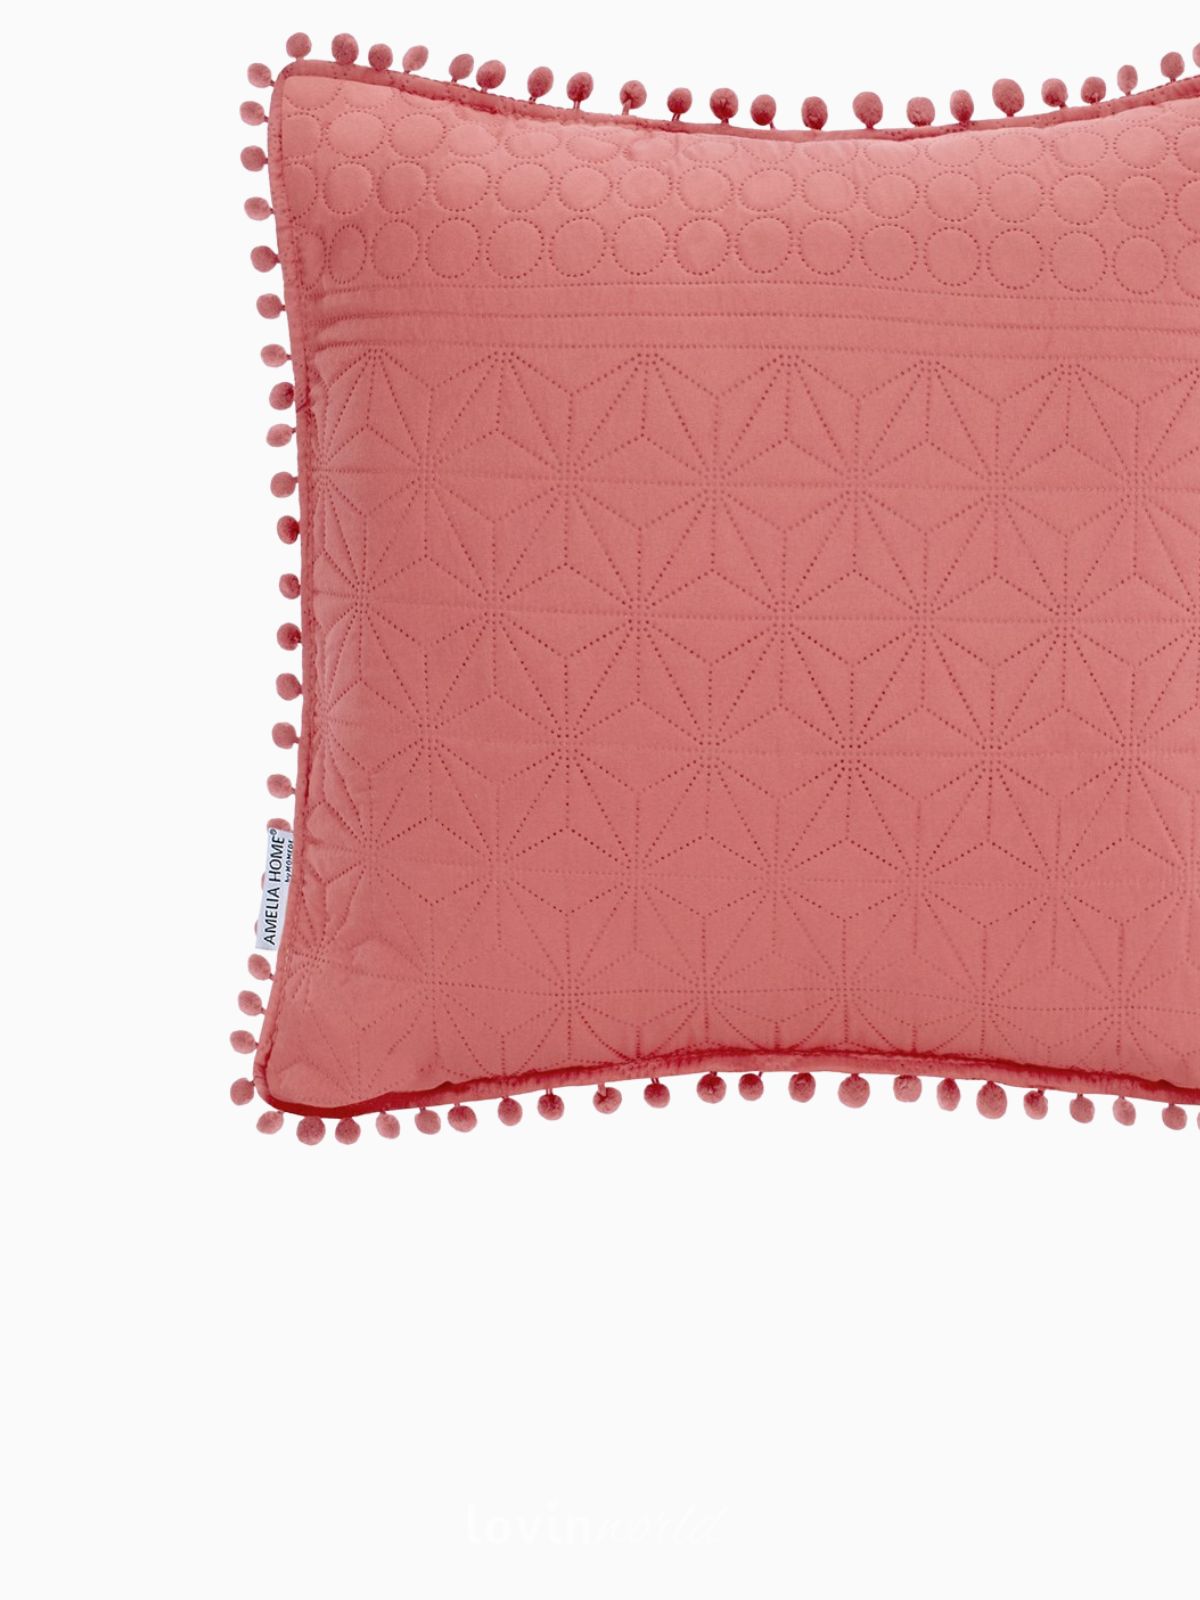 Cuscino decorativo Meadore in colore rosso 45x45 cm.-4